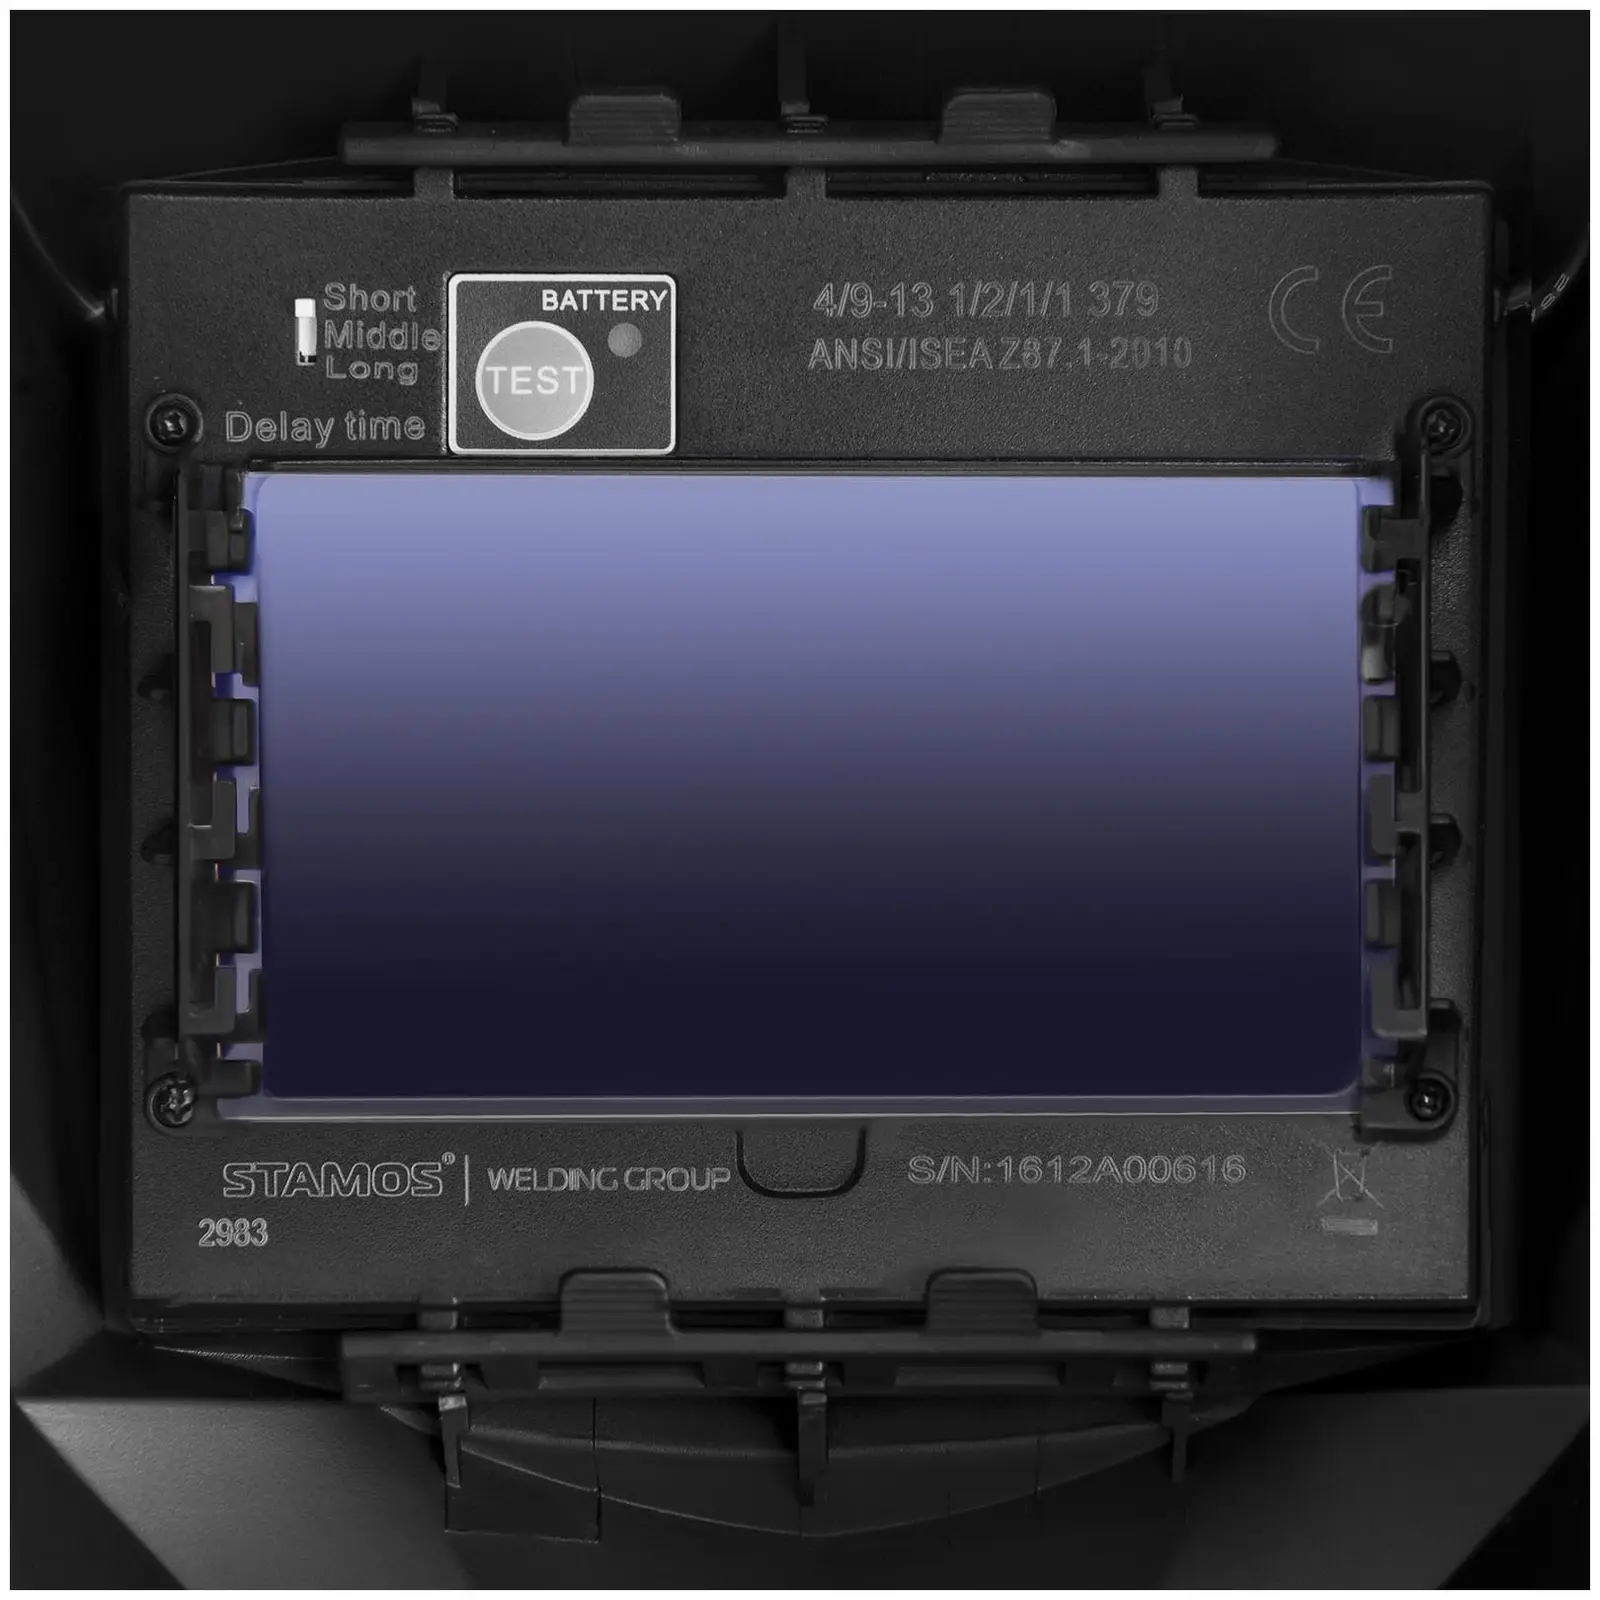 Aluminiumsveiseapparat - Sett - 315 A - 400 V - Puls - Digital - 2/4 Takt + Sveisemask– Metalator - EXPERT SERIES